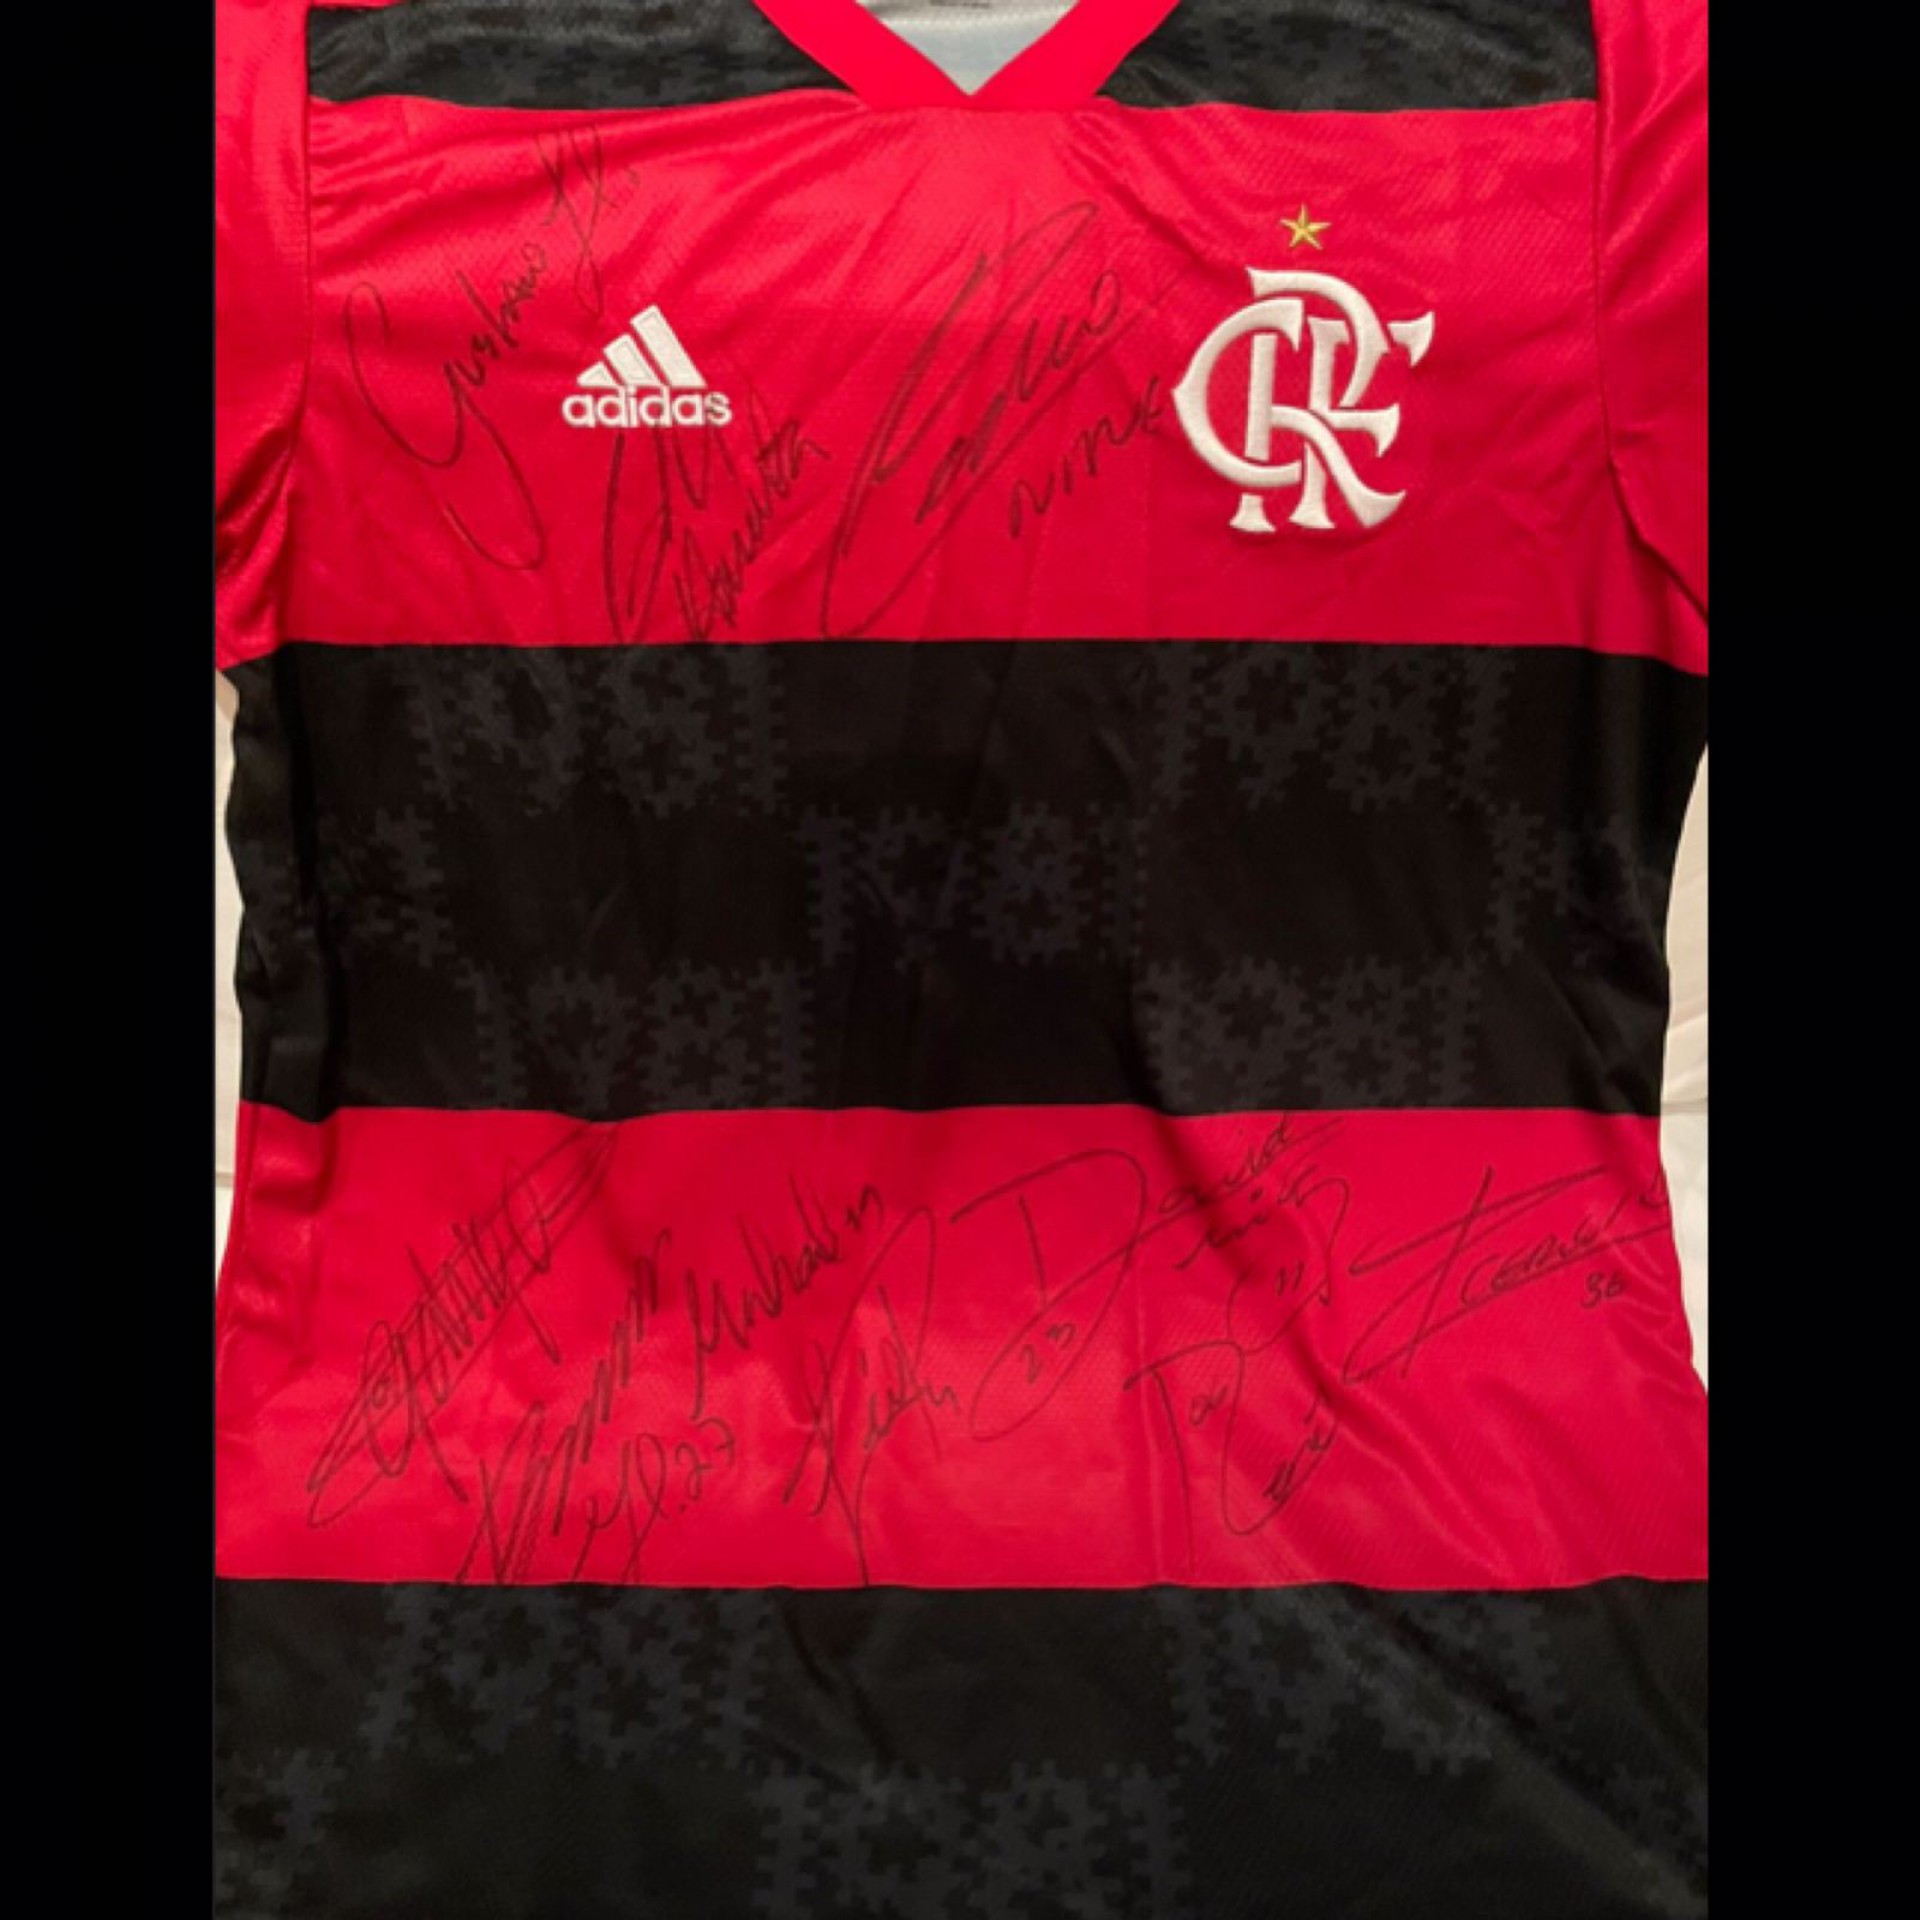 Camisa autografada foi doada pela presidência do Flamengo